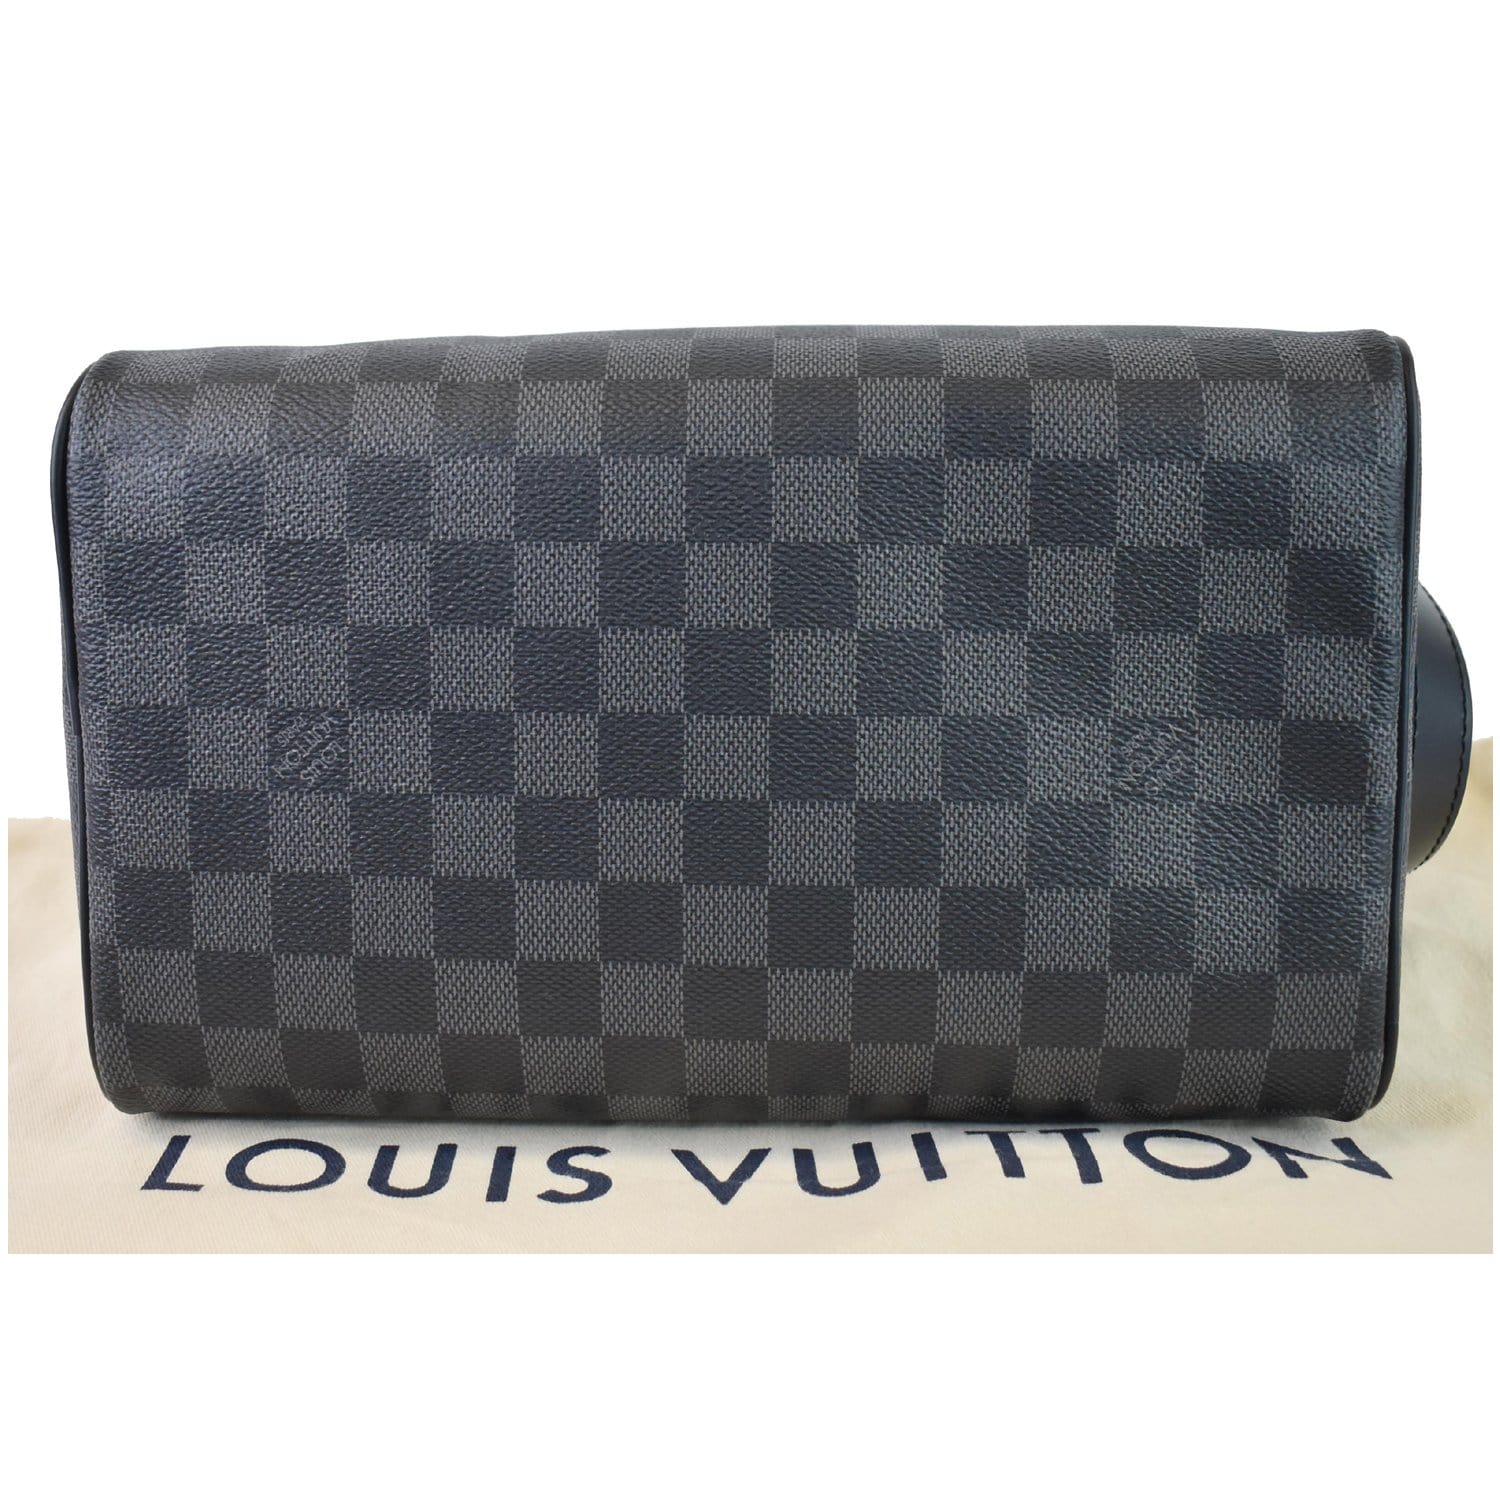 Shop Louis Vuitton MONOGRAM Louis Vuitton DOPP KIT TOILET POUCH by